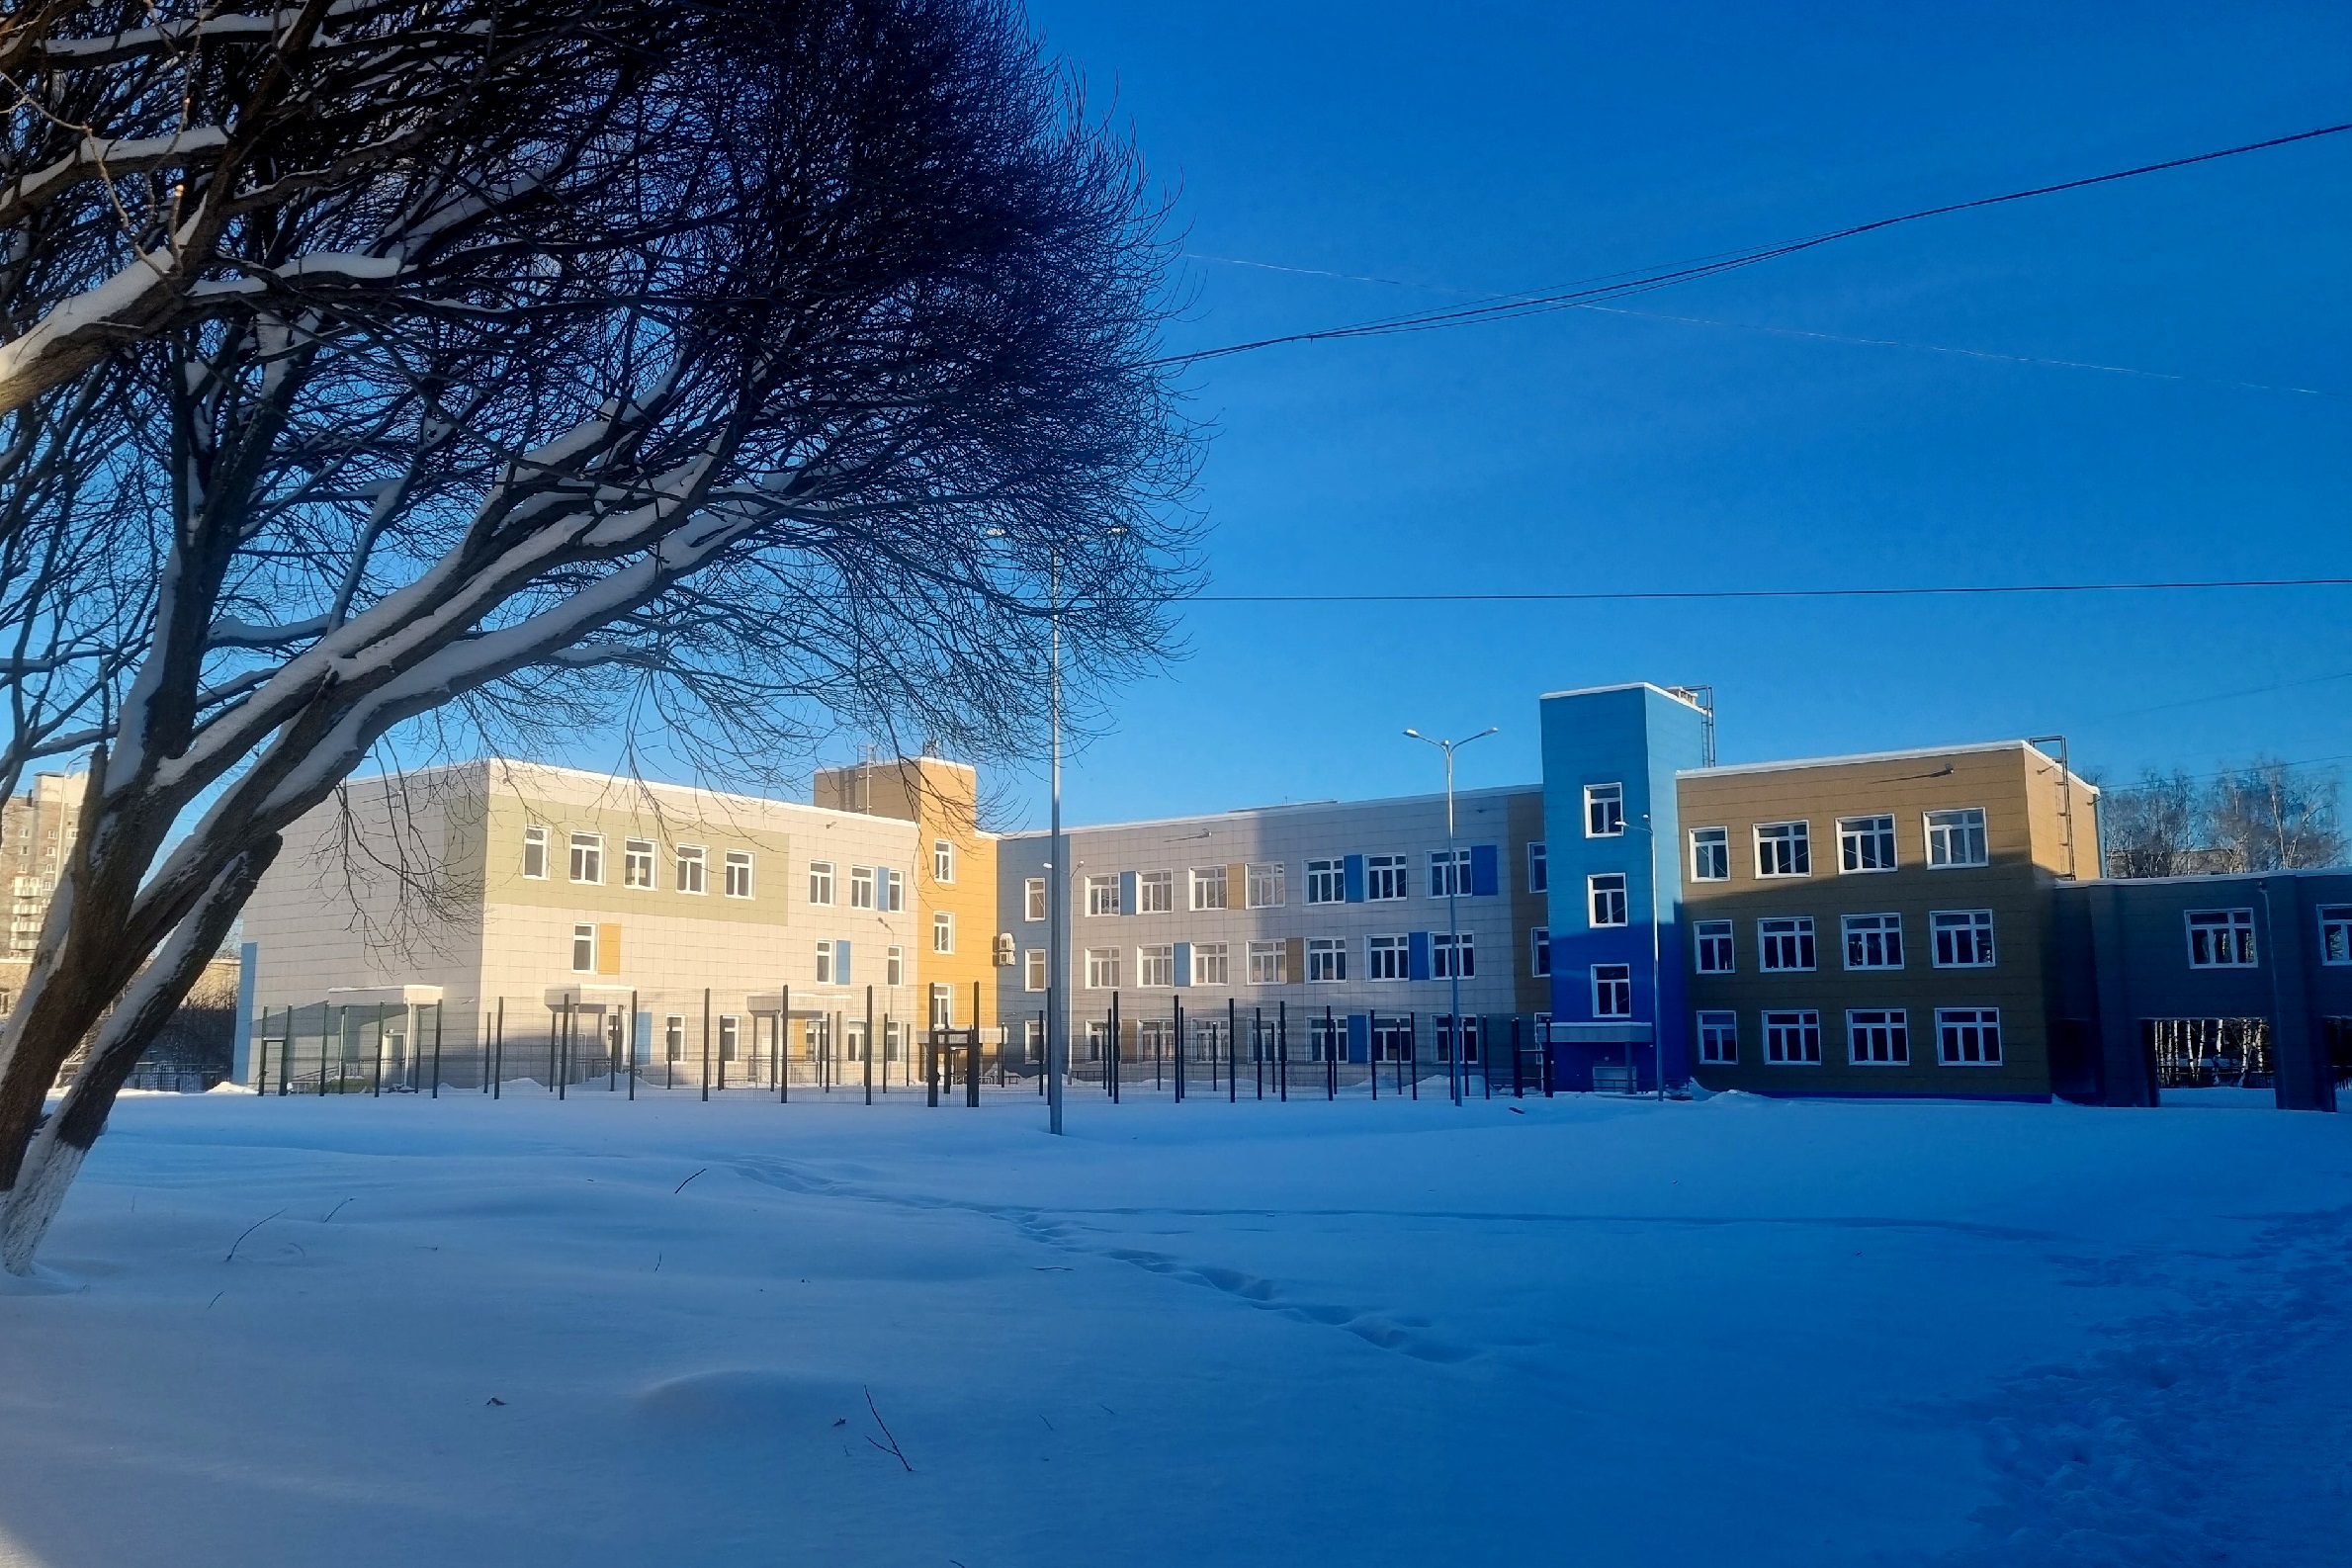 В новый школьный корпус в Суховке на первом этапе переведут 8 классов.